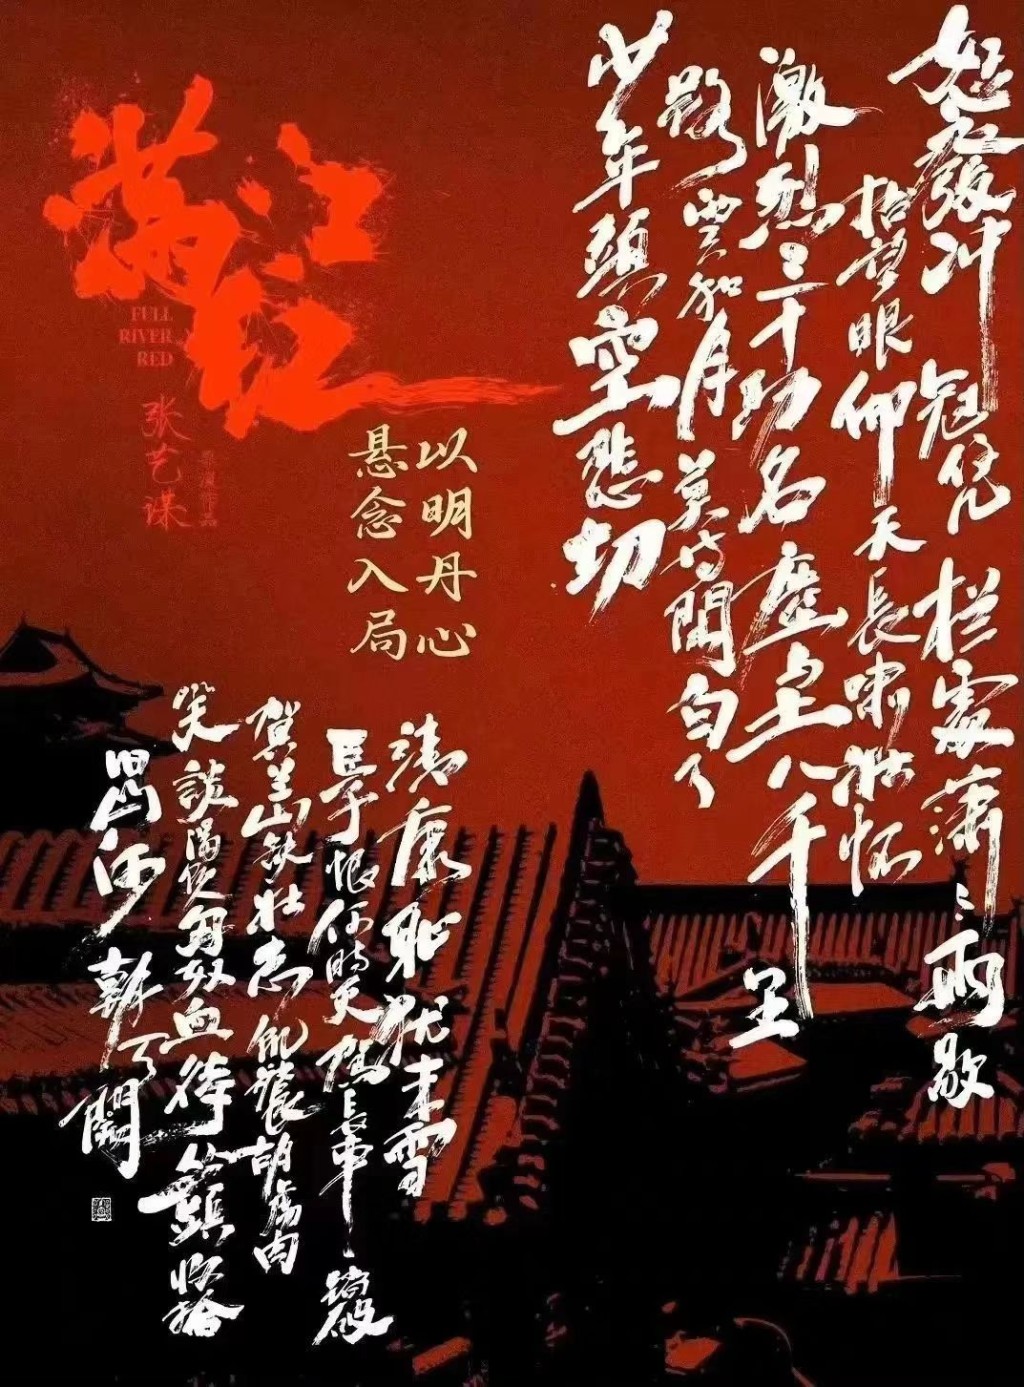 《满江红》的书法宣传海报。